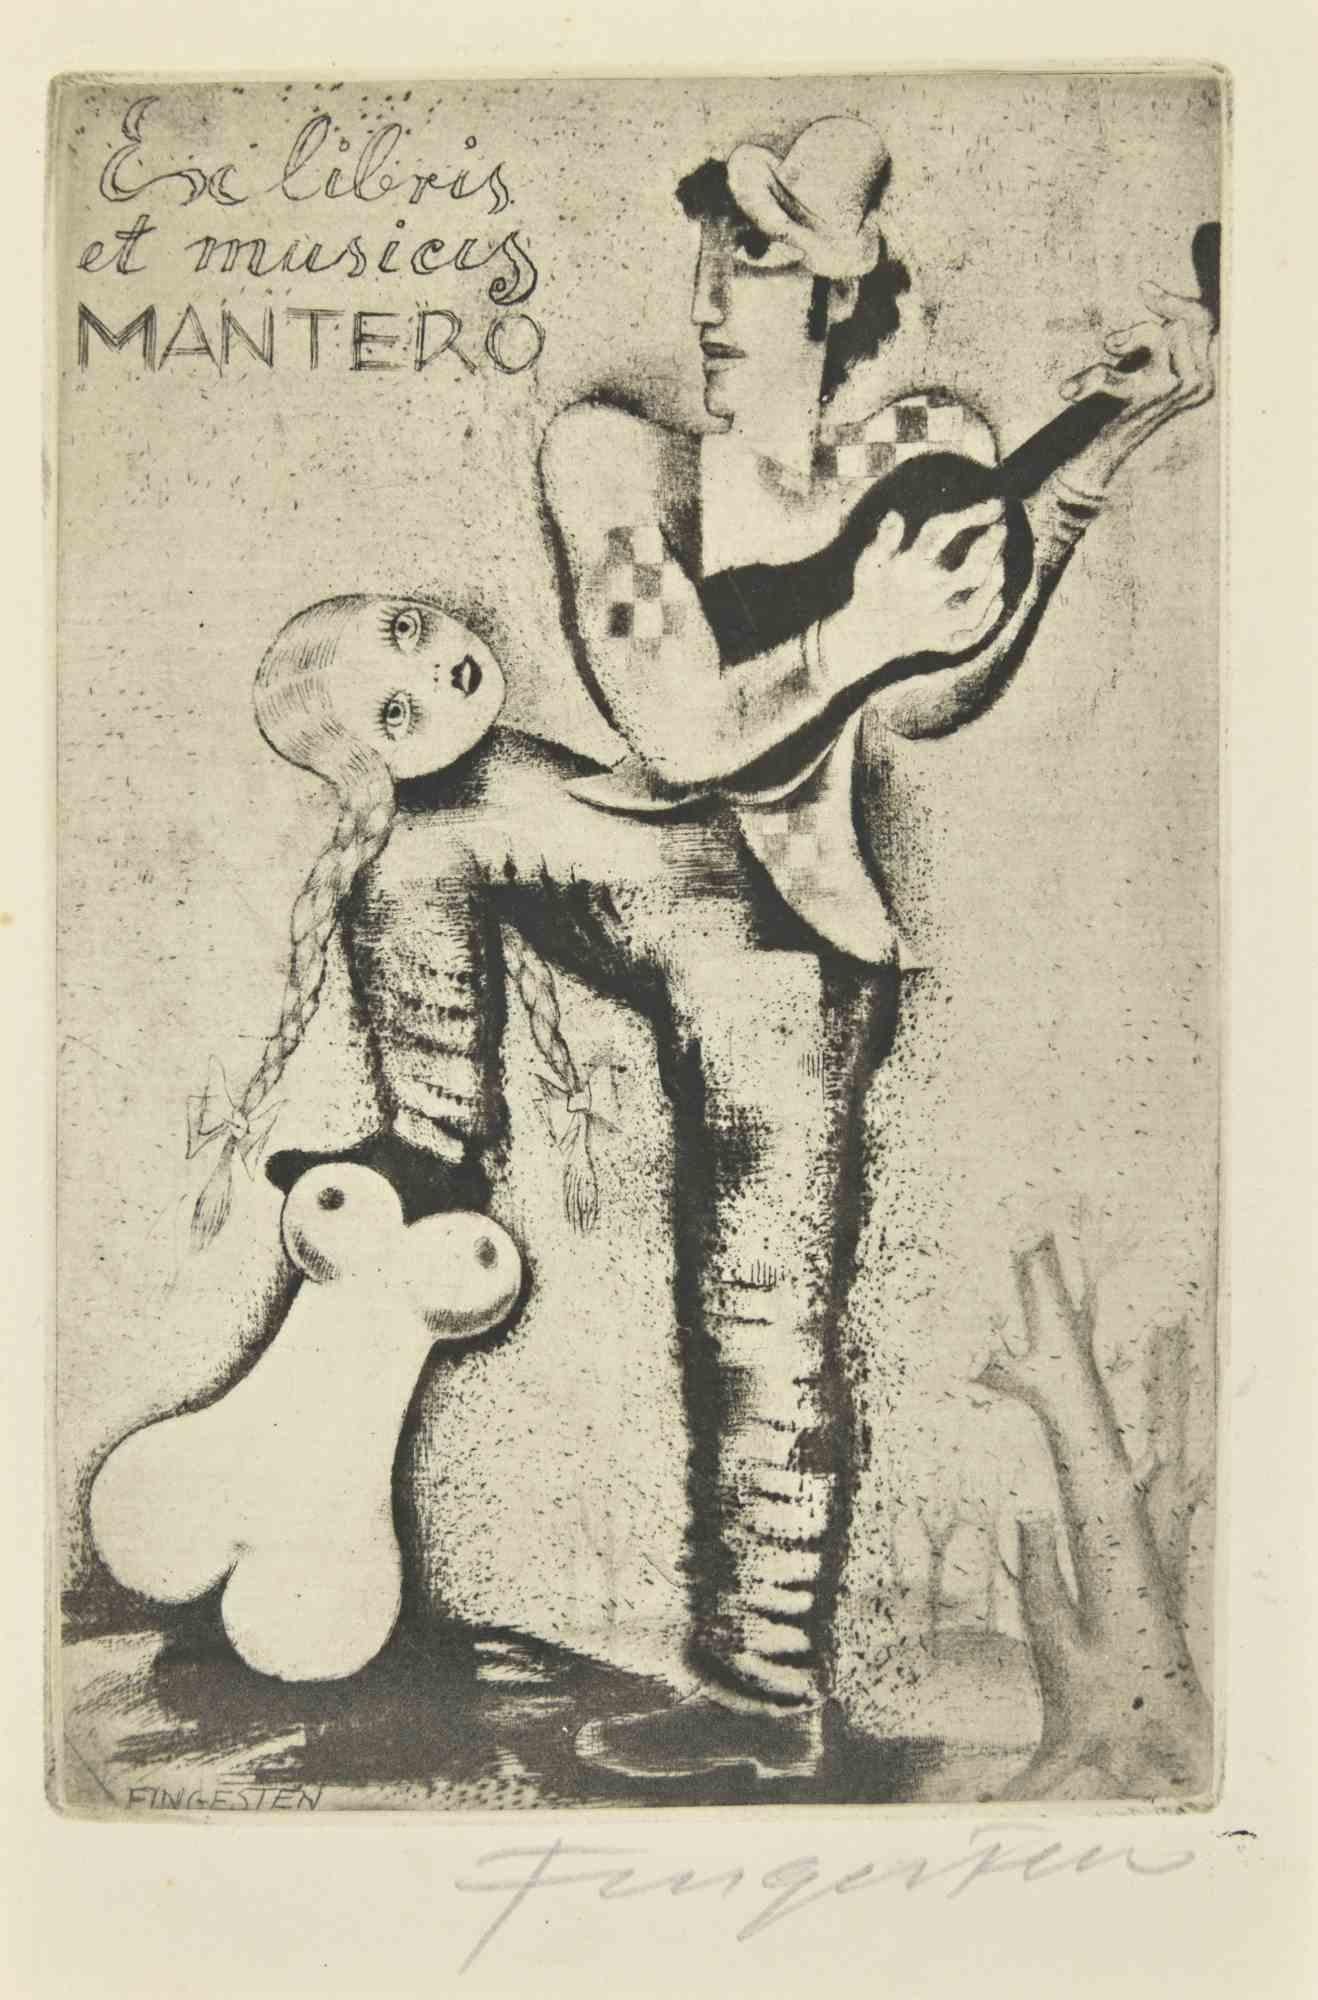 Ex Libris et Musicis Mantero ist eine Radierung erstellt von  Michel Fingesten.

Handsigniert am rechten Rand. 

Sehr guter Zustand.

Michel Fingesten (1884 - 1943) war ein tschechischer Maler und Graveur jüdischer Herkunft. Er gilt als einer der